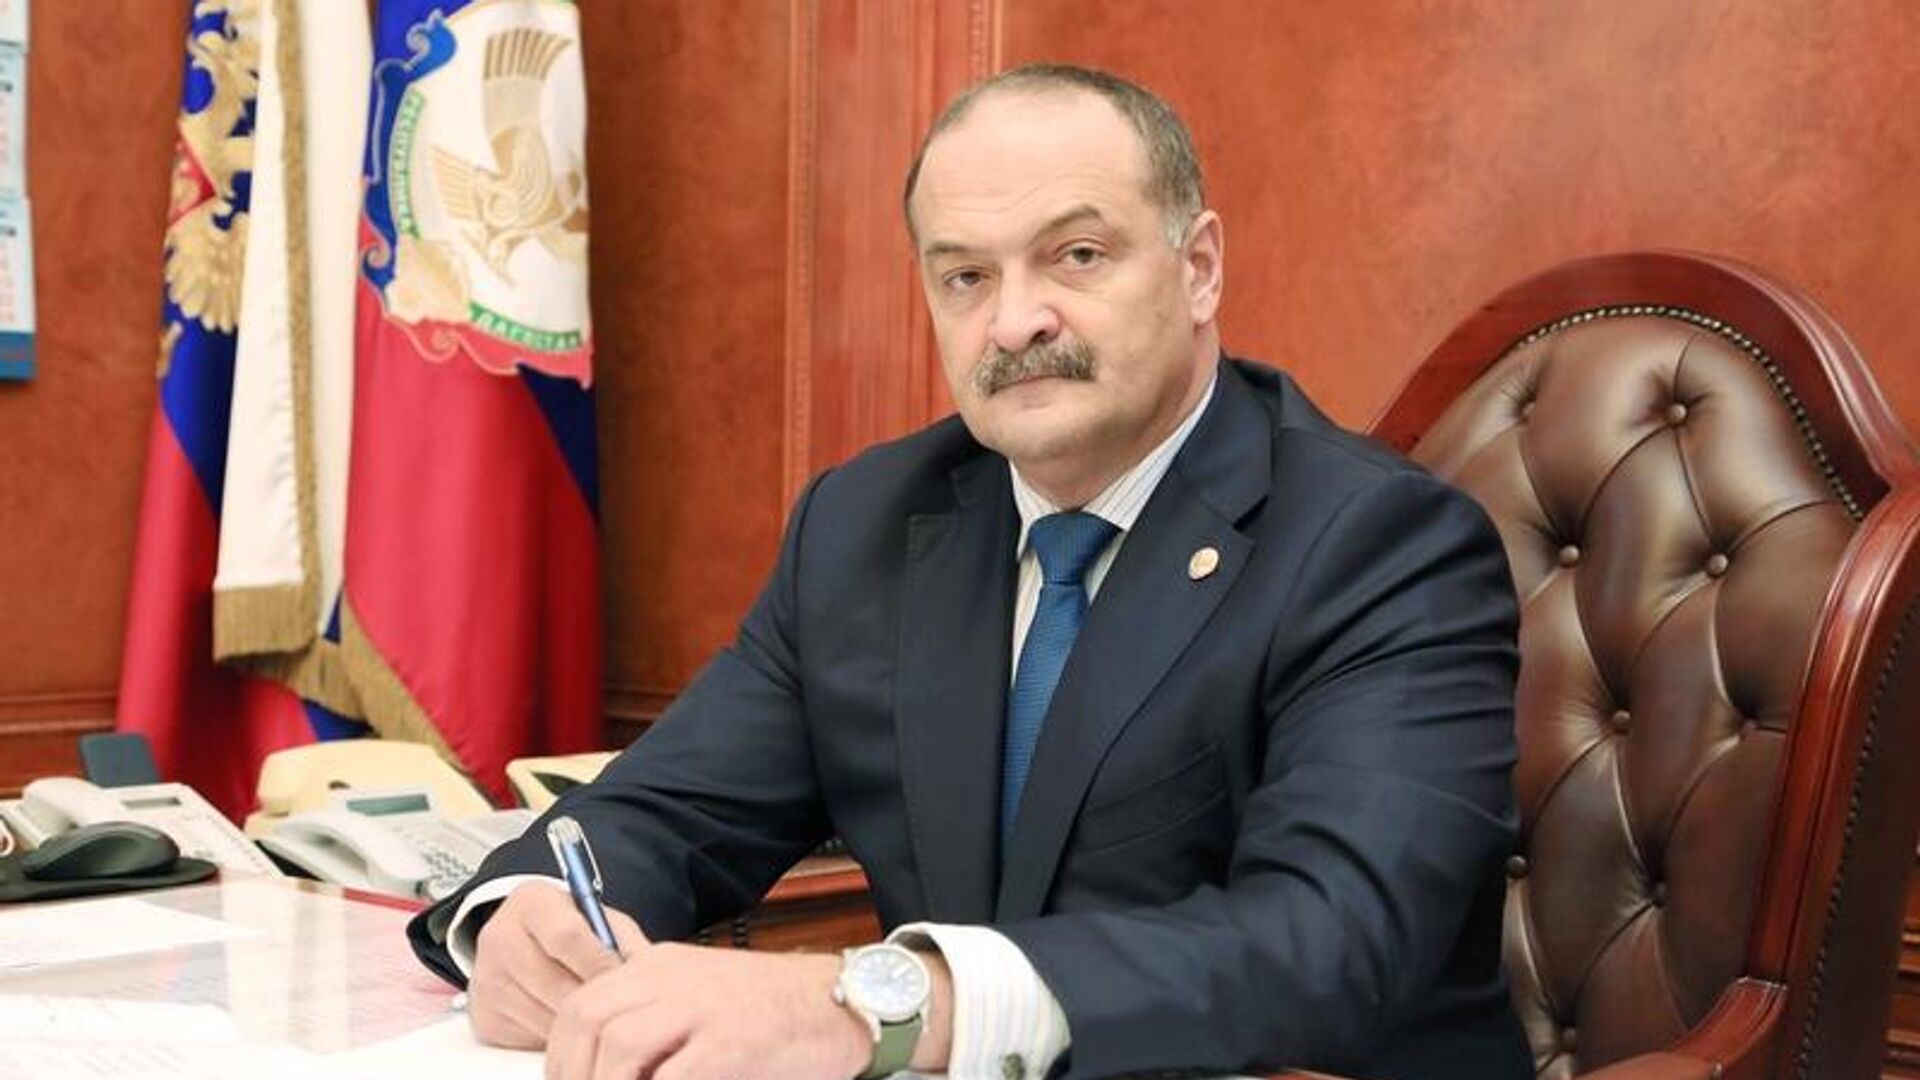 Сегодня свой день рождения отмечает Глава Республики Дагестан Сергей Меликов.